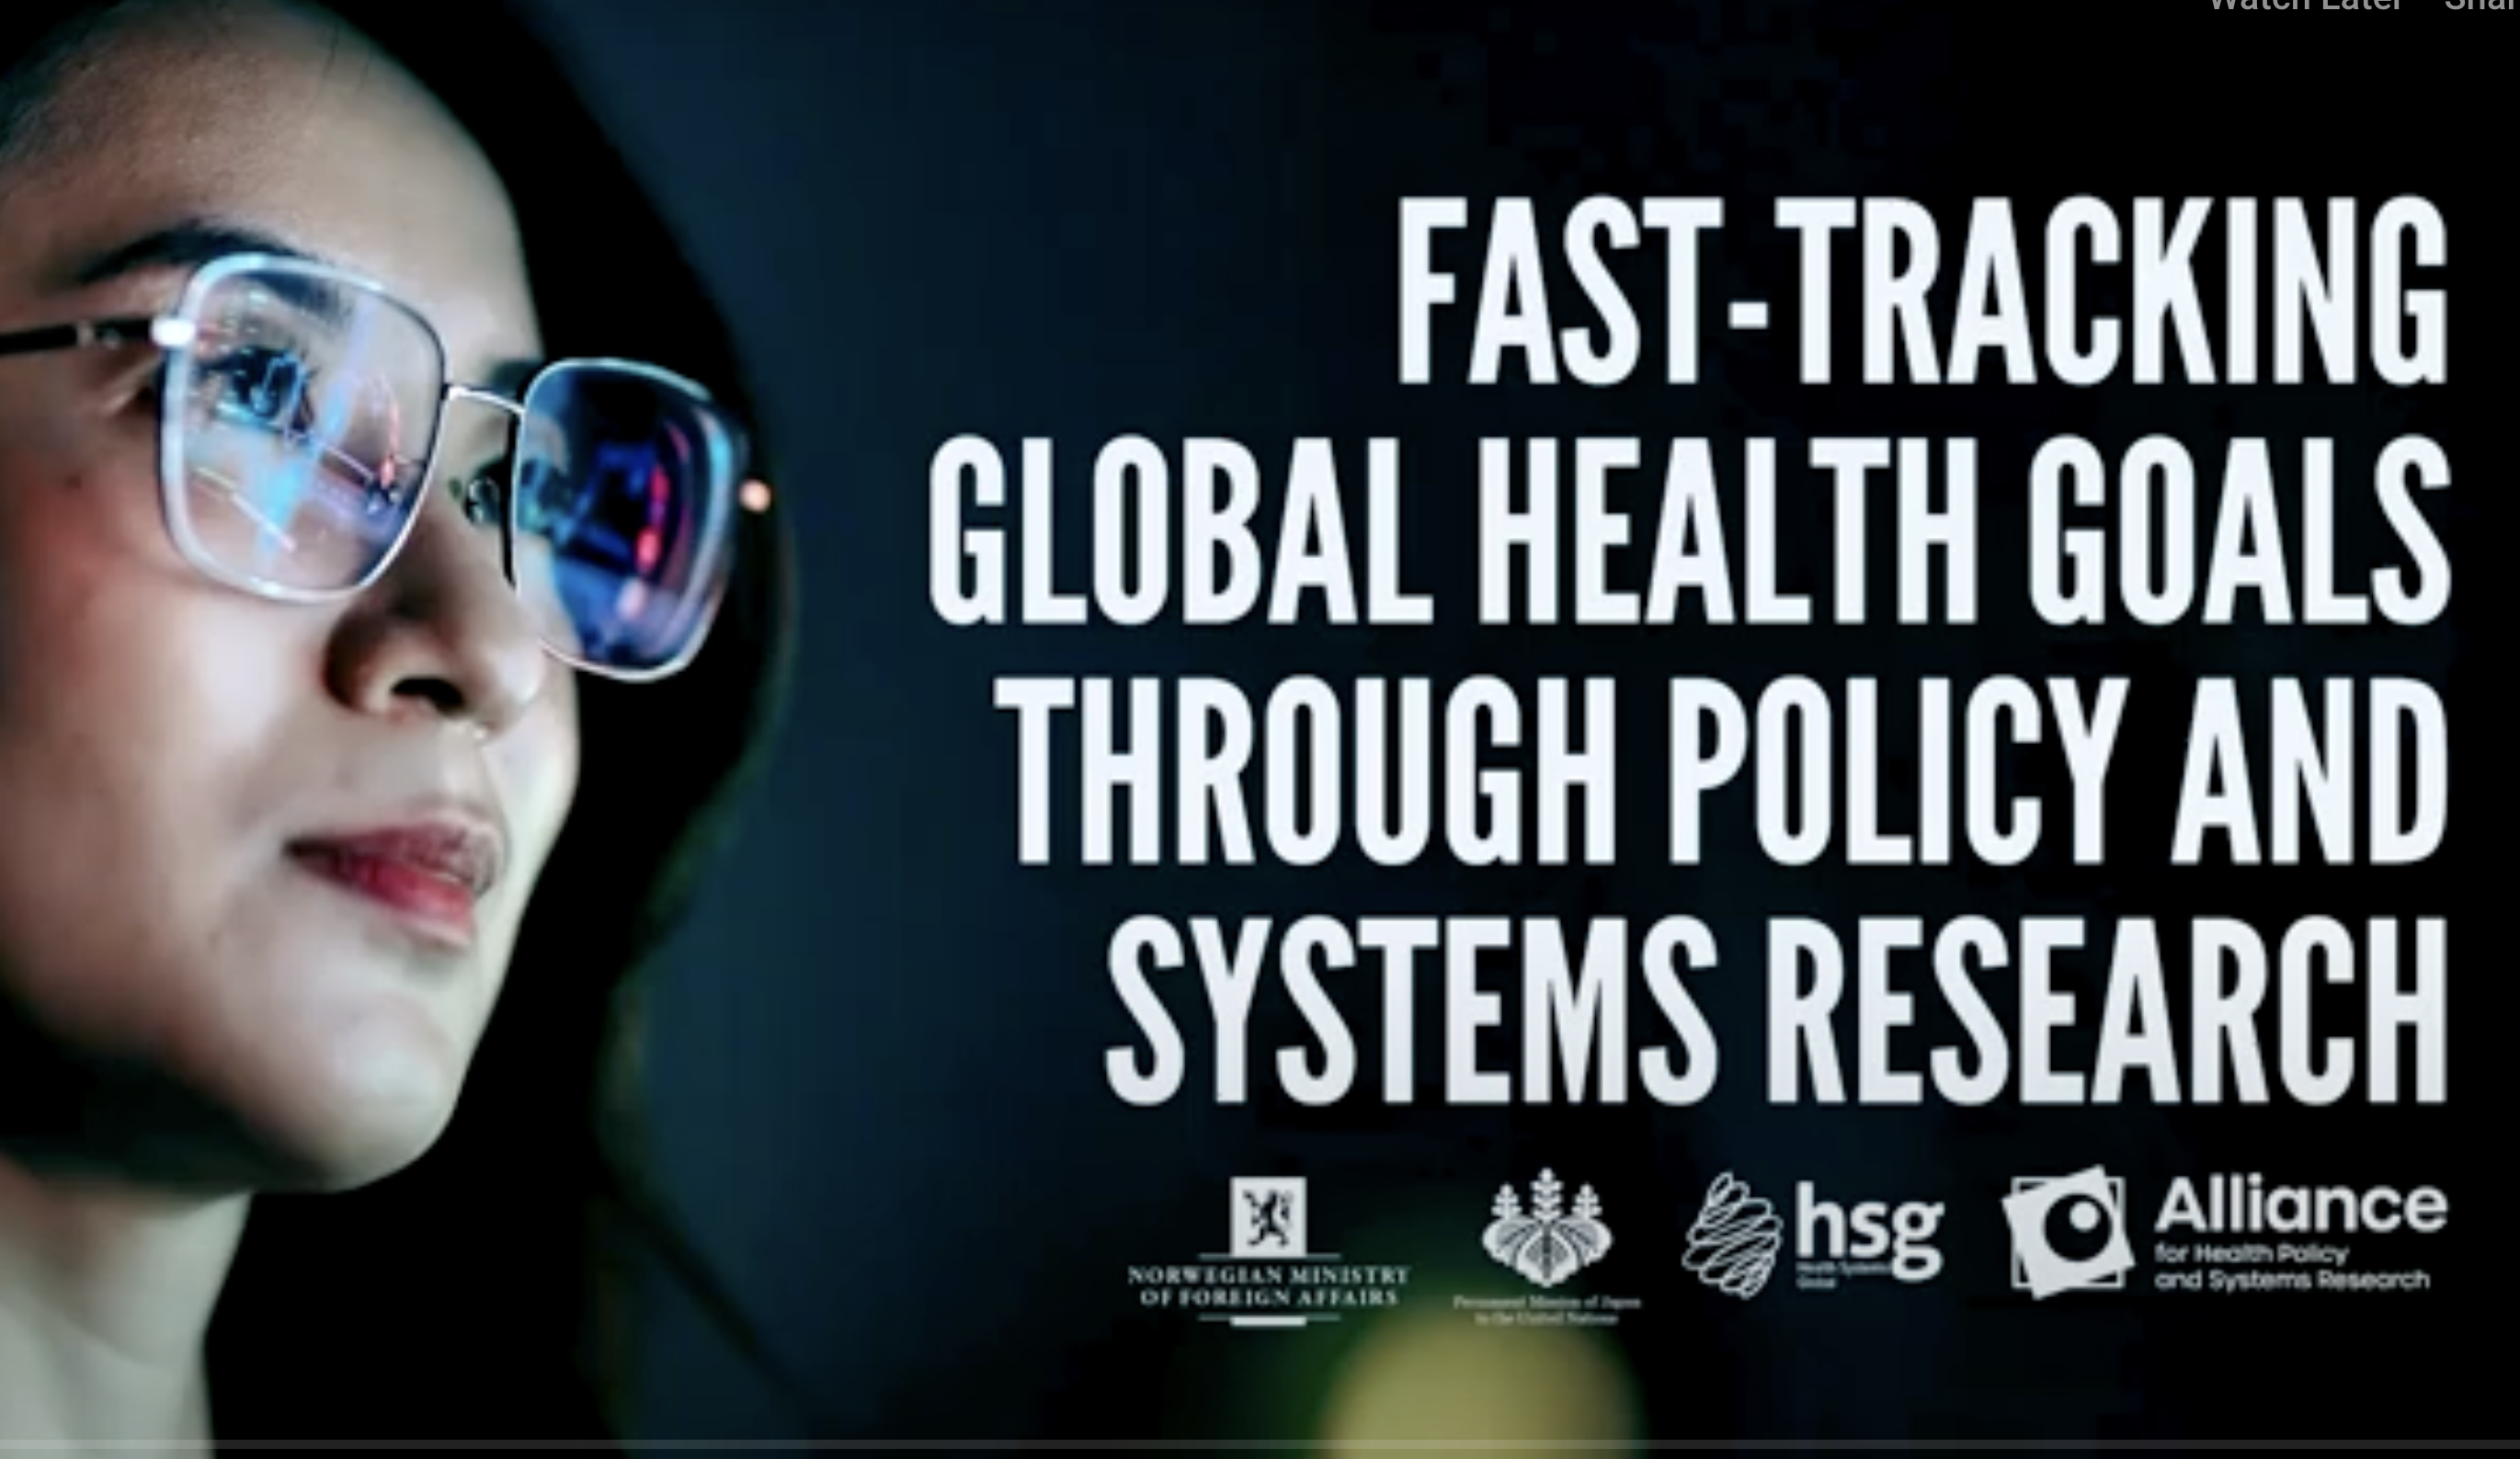 78-е параллельное мероприятие ГА ООН: Ускоренное достижение глобальных целей в области здравоохранения с помощью исследований политики и систем здравоохранения